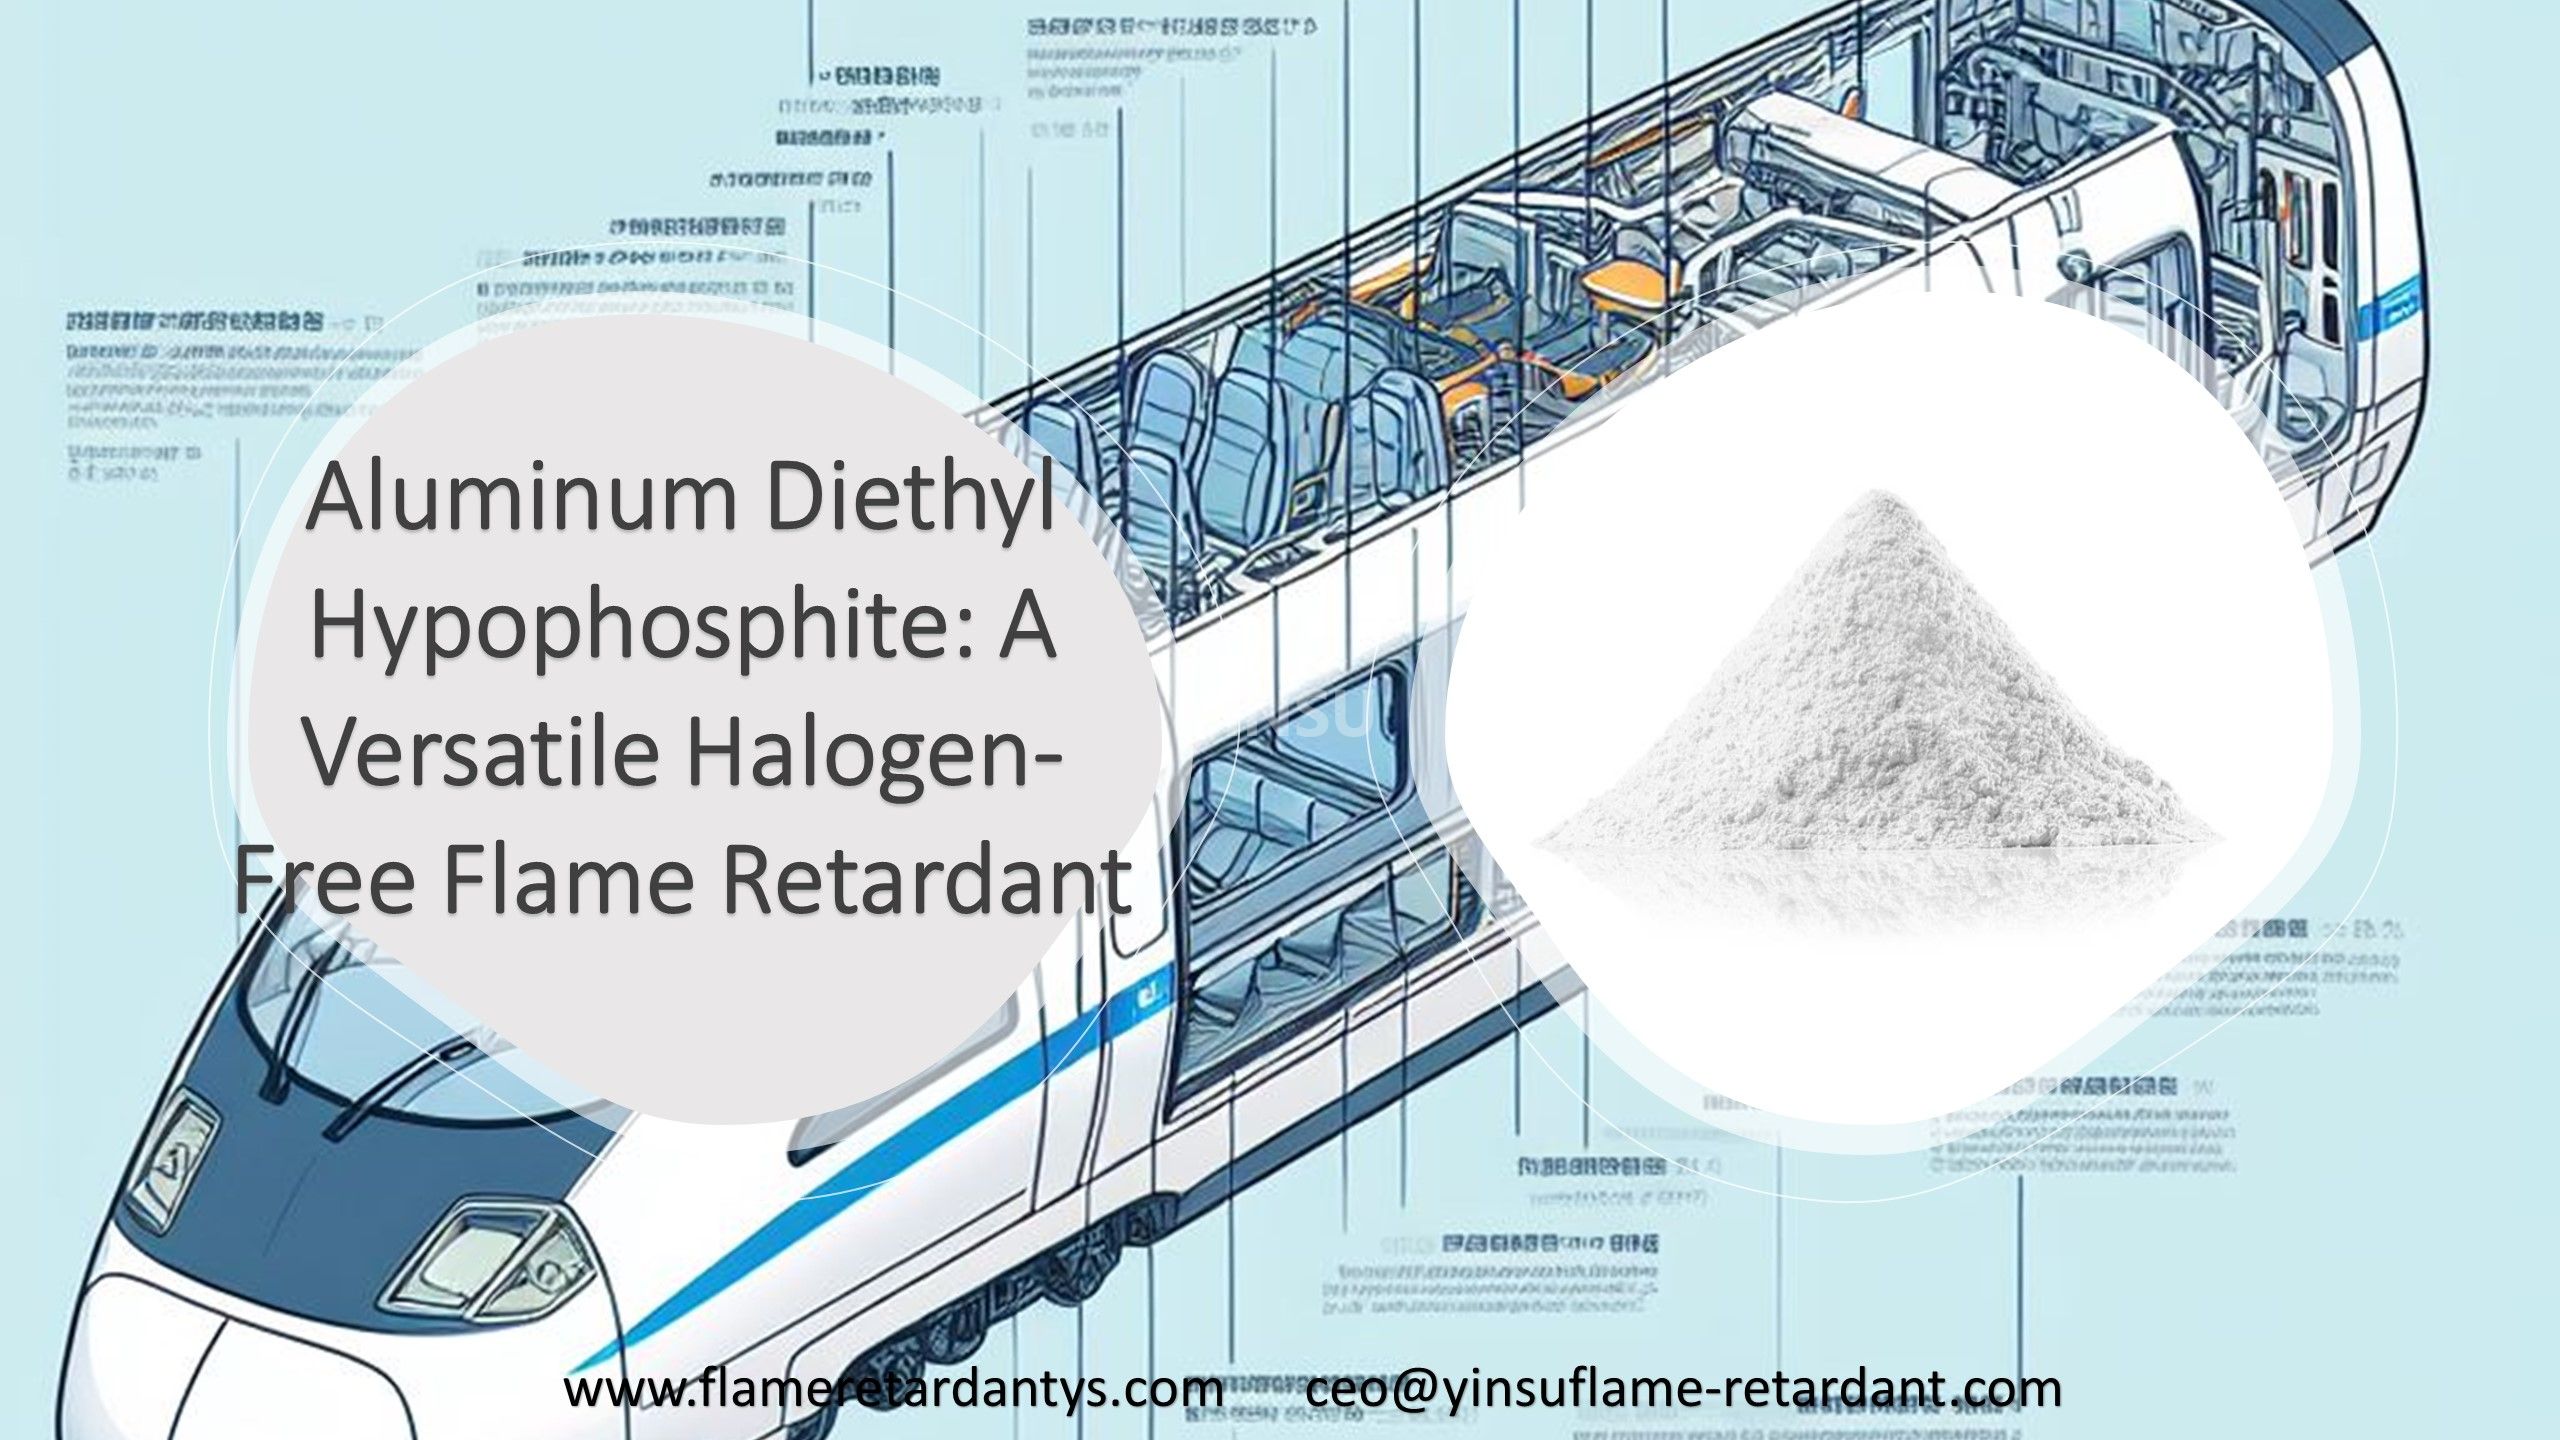 Découvrez l'hypophosphite diéthylique d'aluminium : un ignifuge polyvalent sans halogène